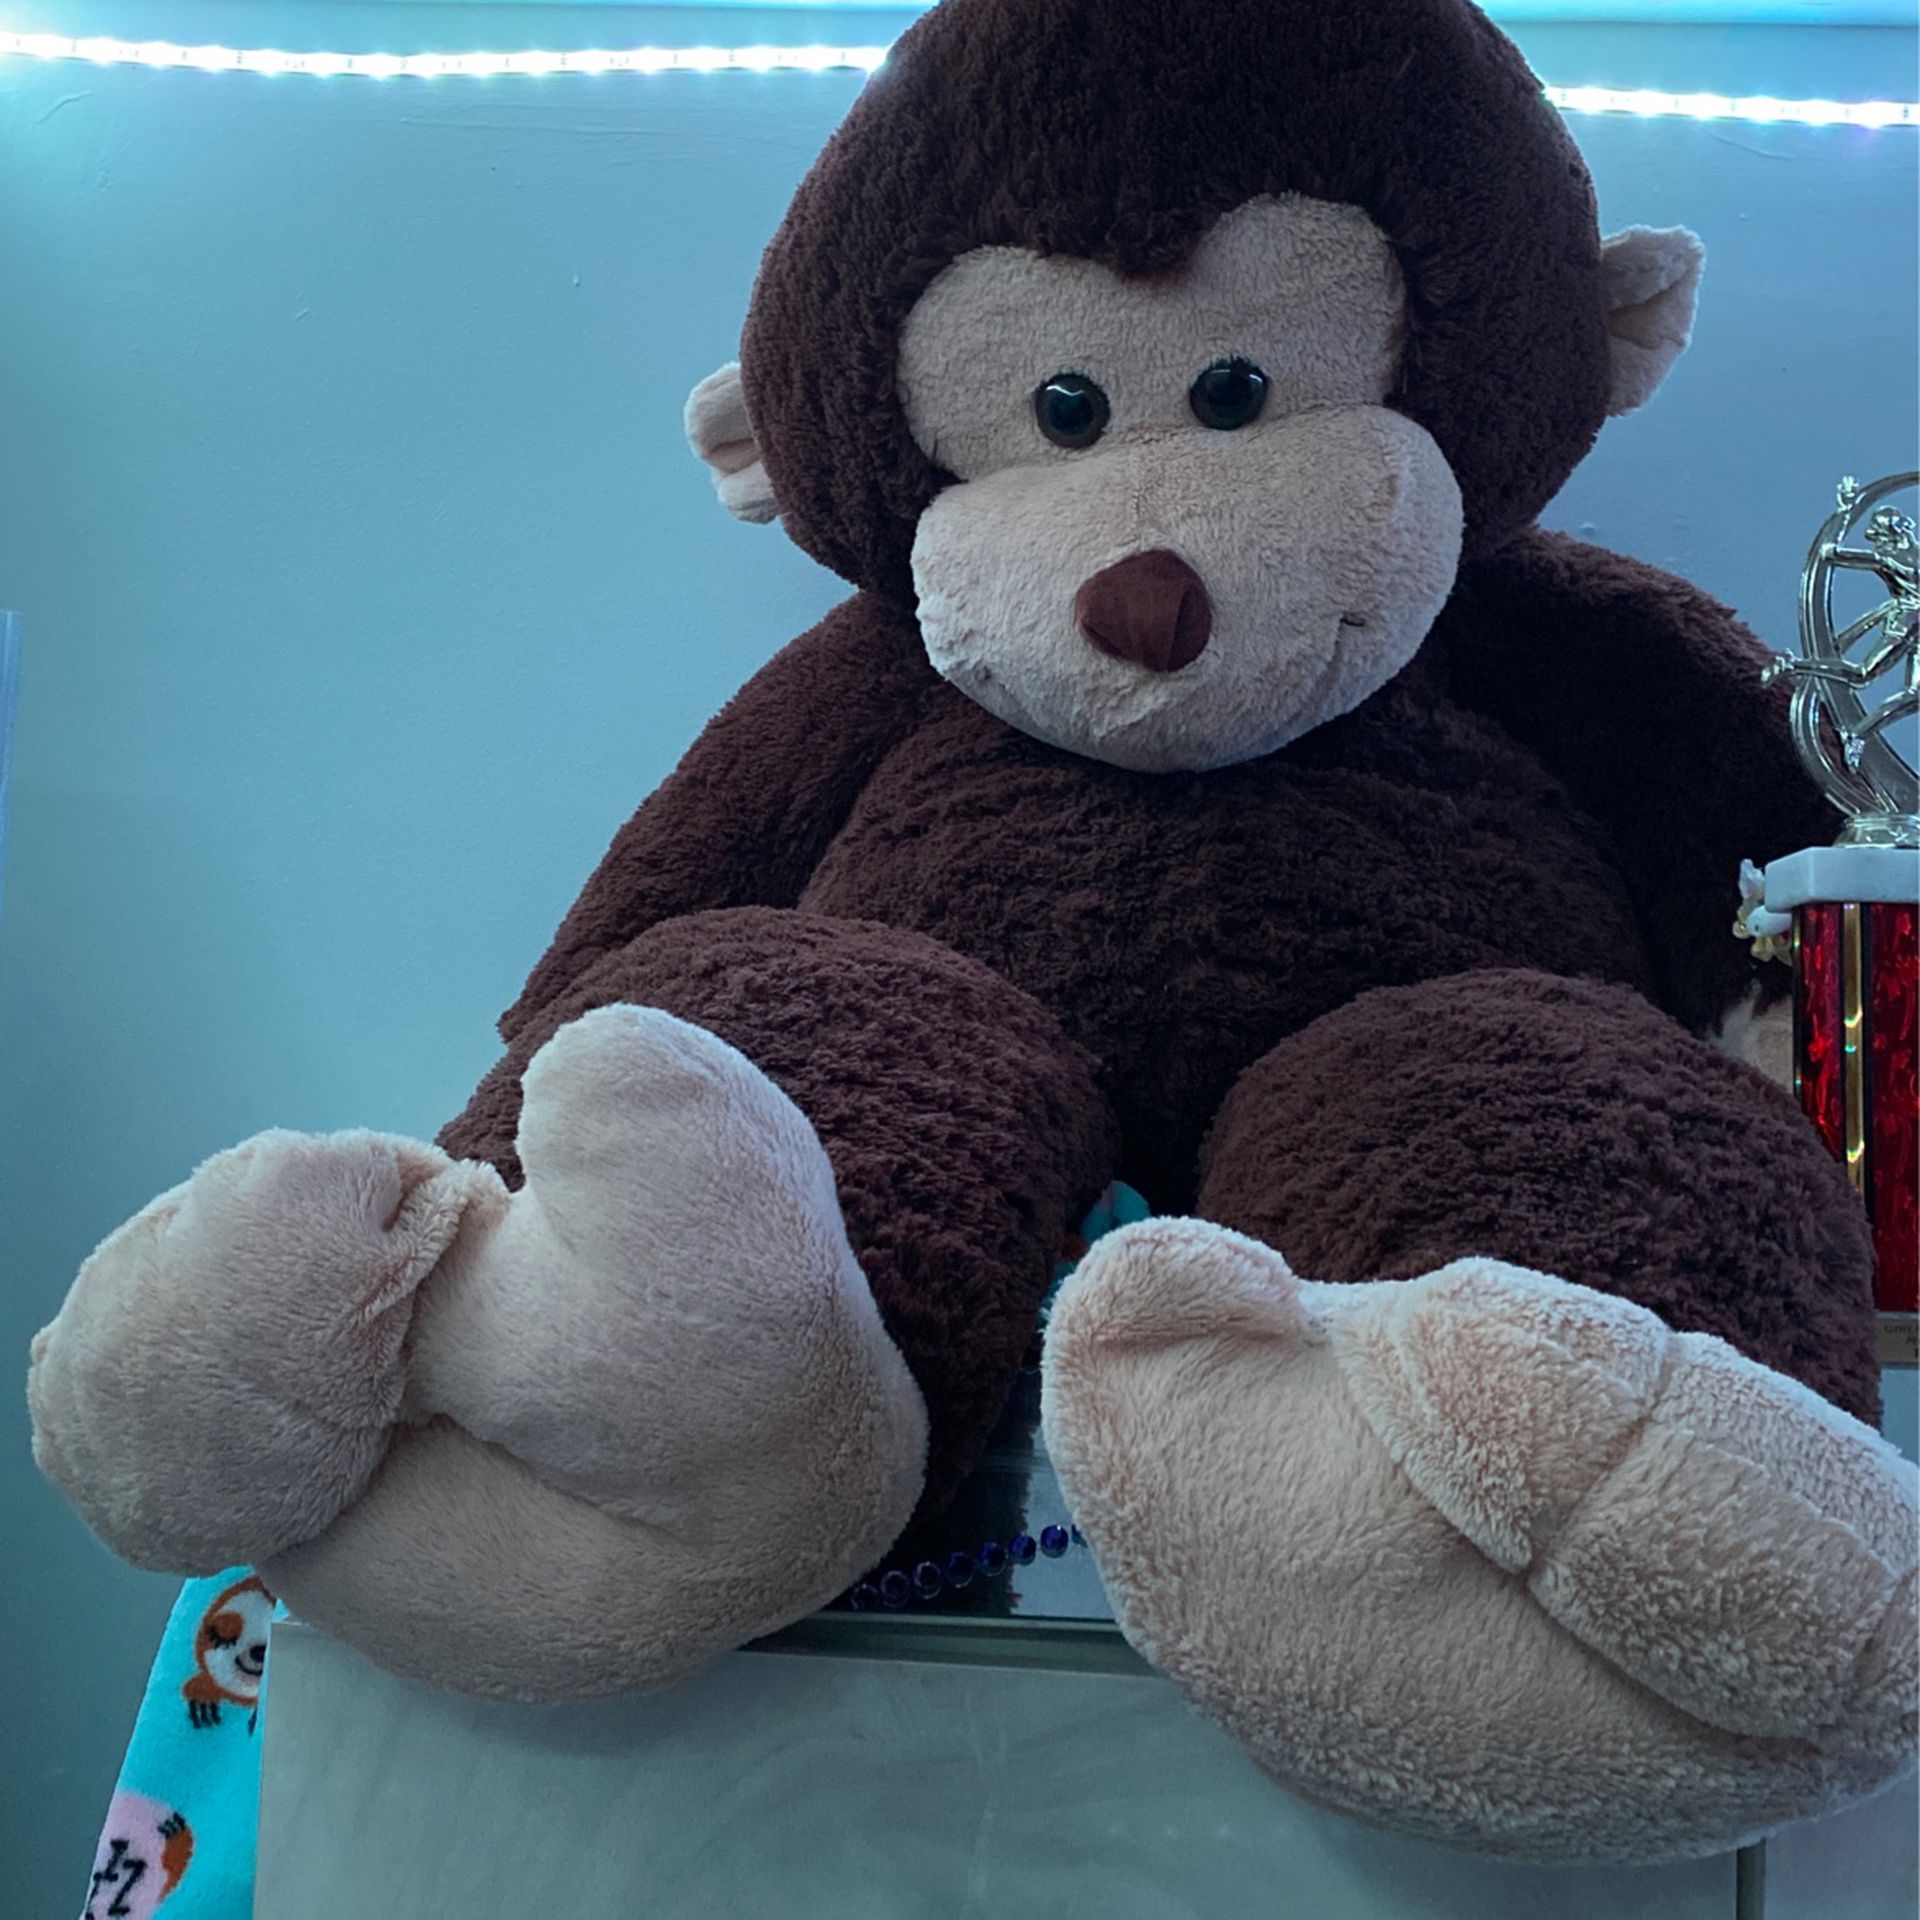 Giant Stuffed Monkey